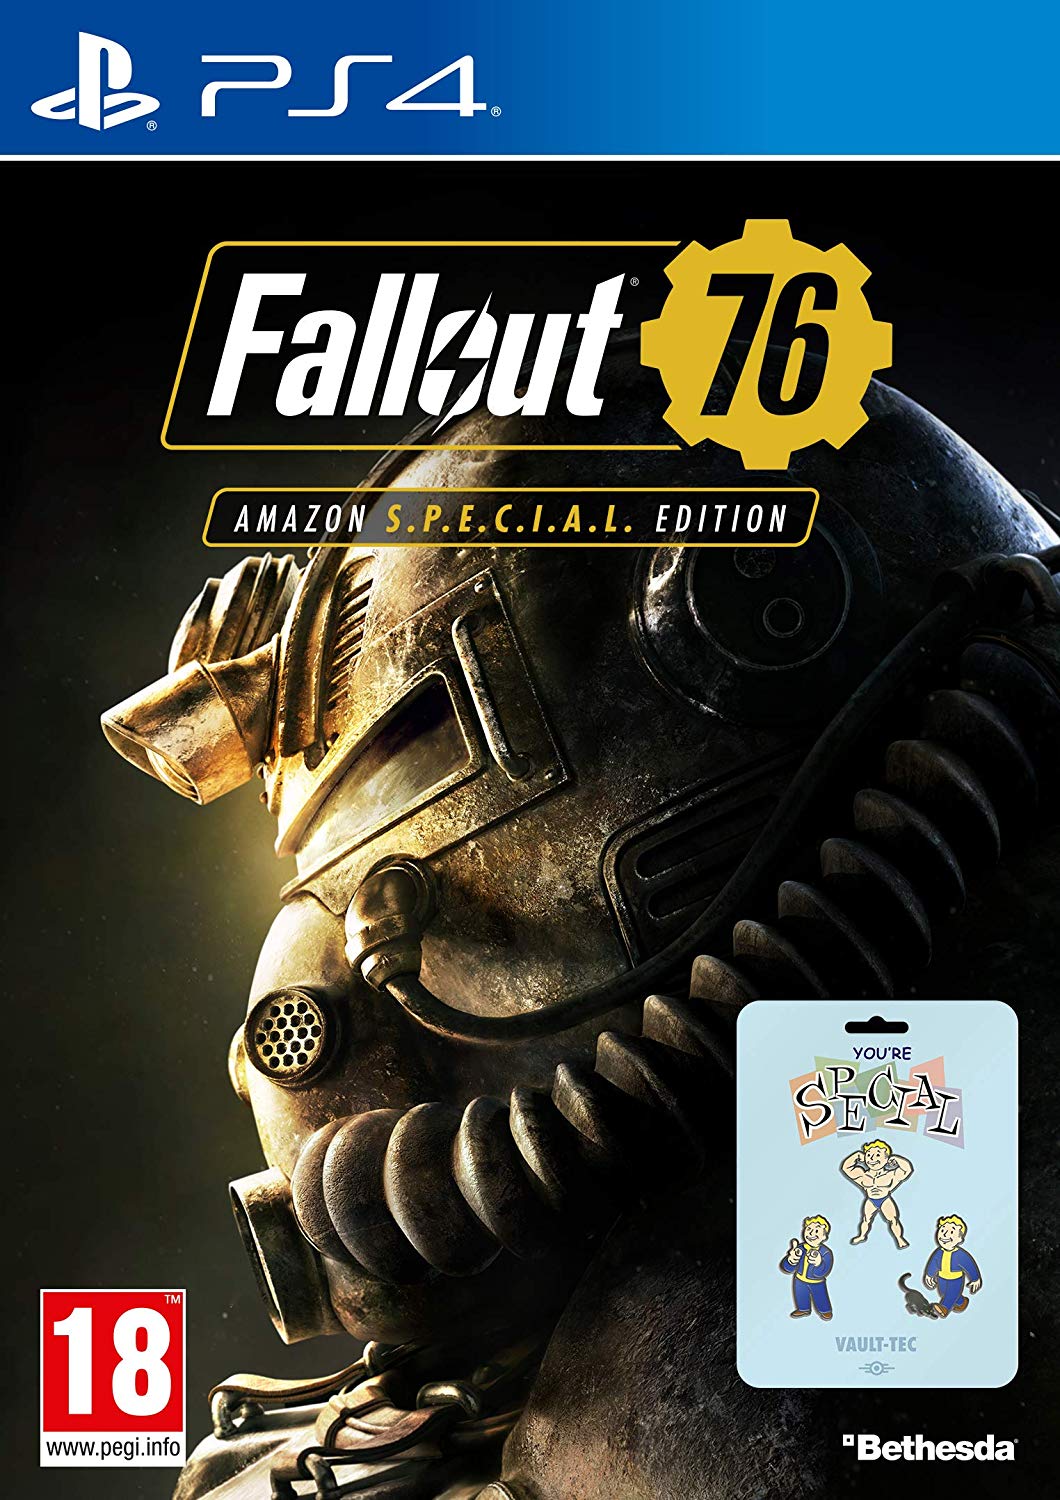 Jeu PS4 pas cher - Fallout 76 - Amazon S.P.E.C.I.A.L édition (3 pins)